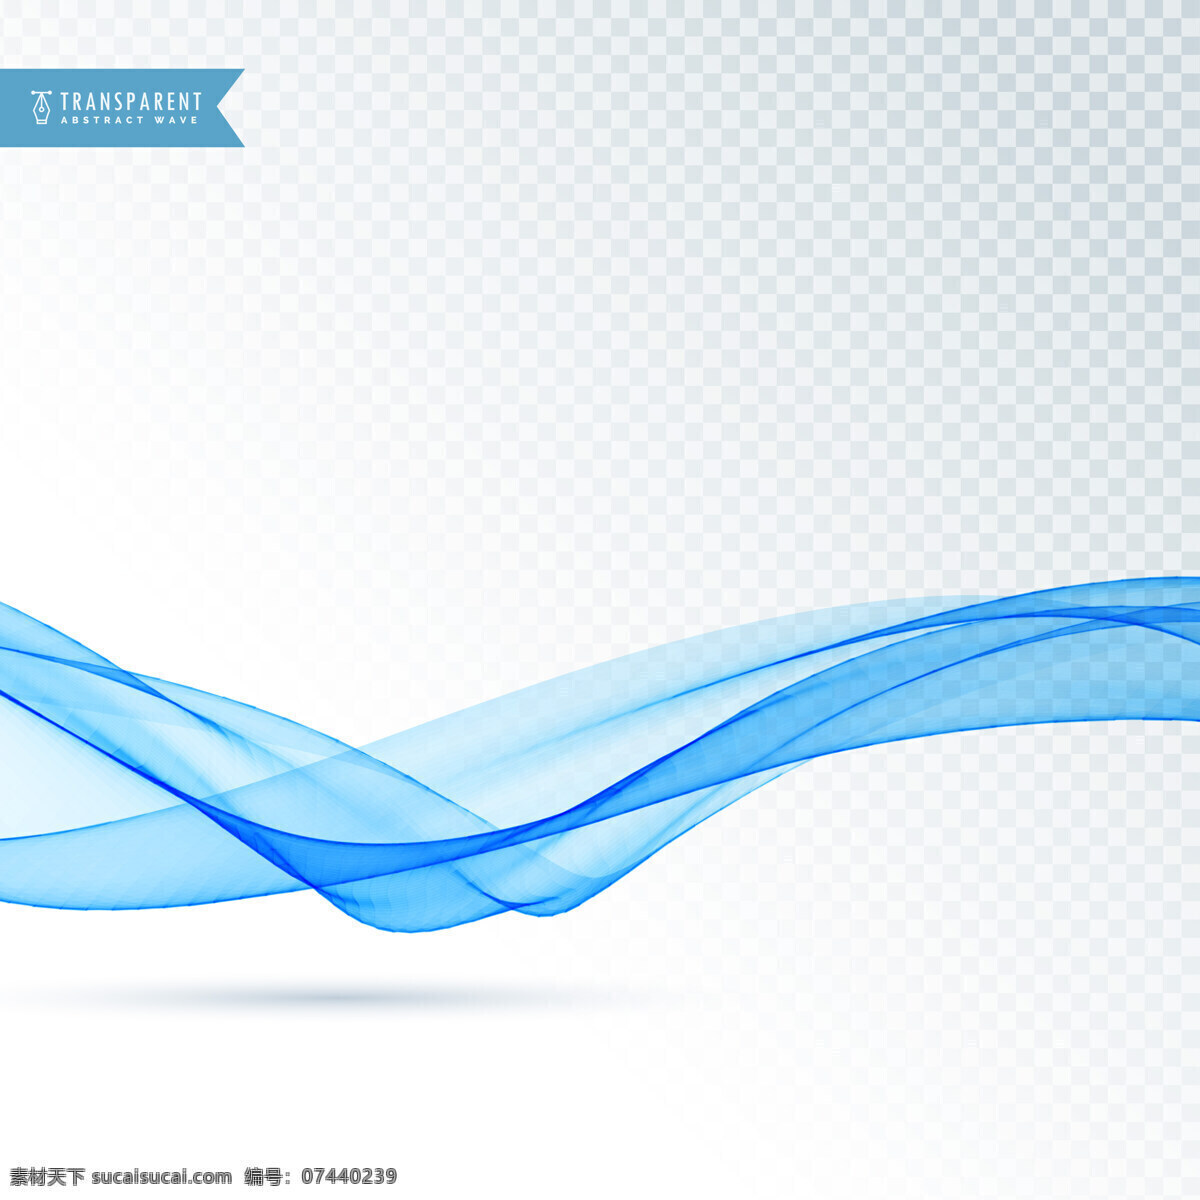 浮动 蓝色 波浪 背景 商业 抽象 线条 形状 烟雾 优雅 能量 漩涡 现代 效果 透明 抽象的形状 运动 柔软 动态